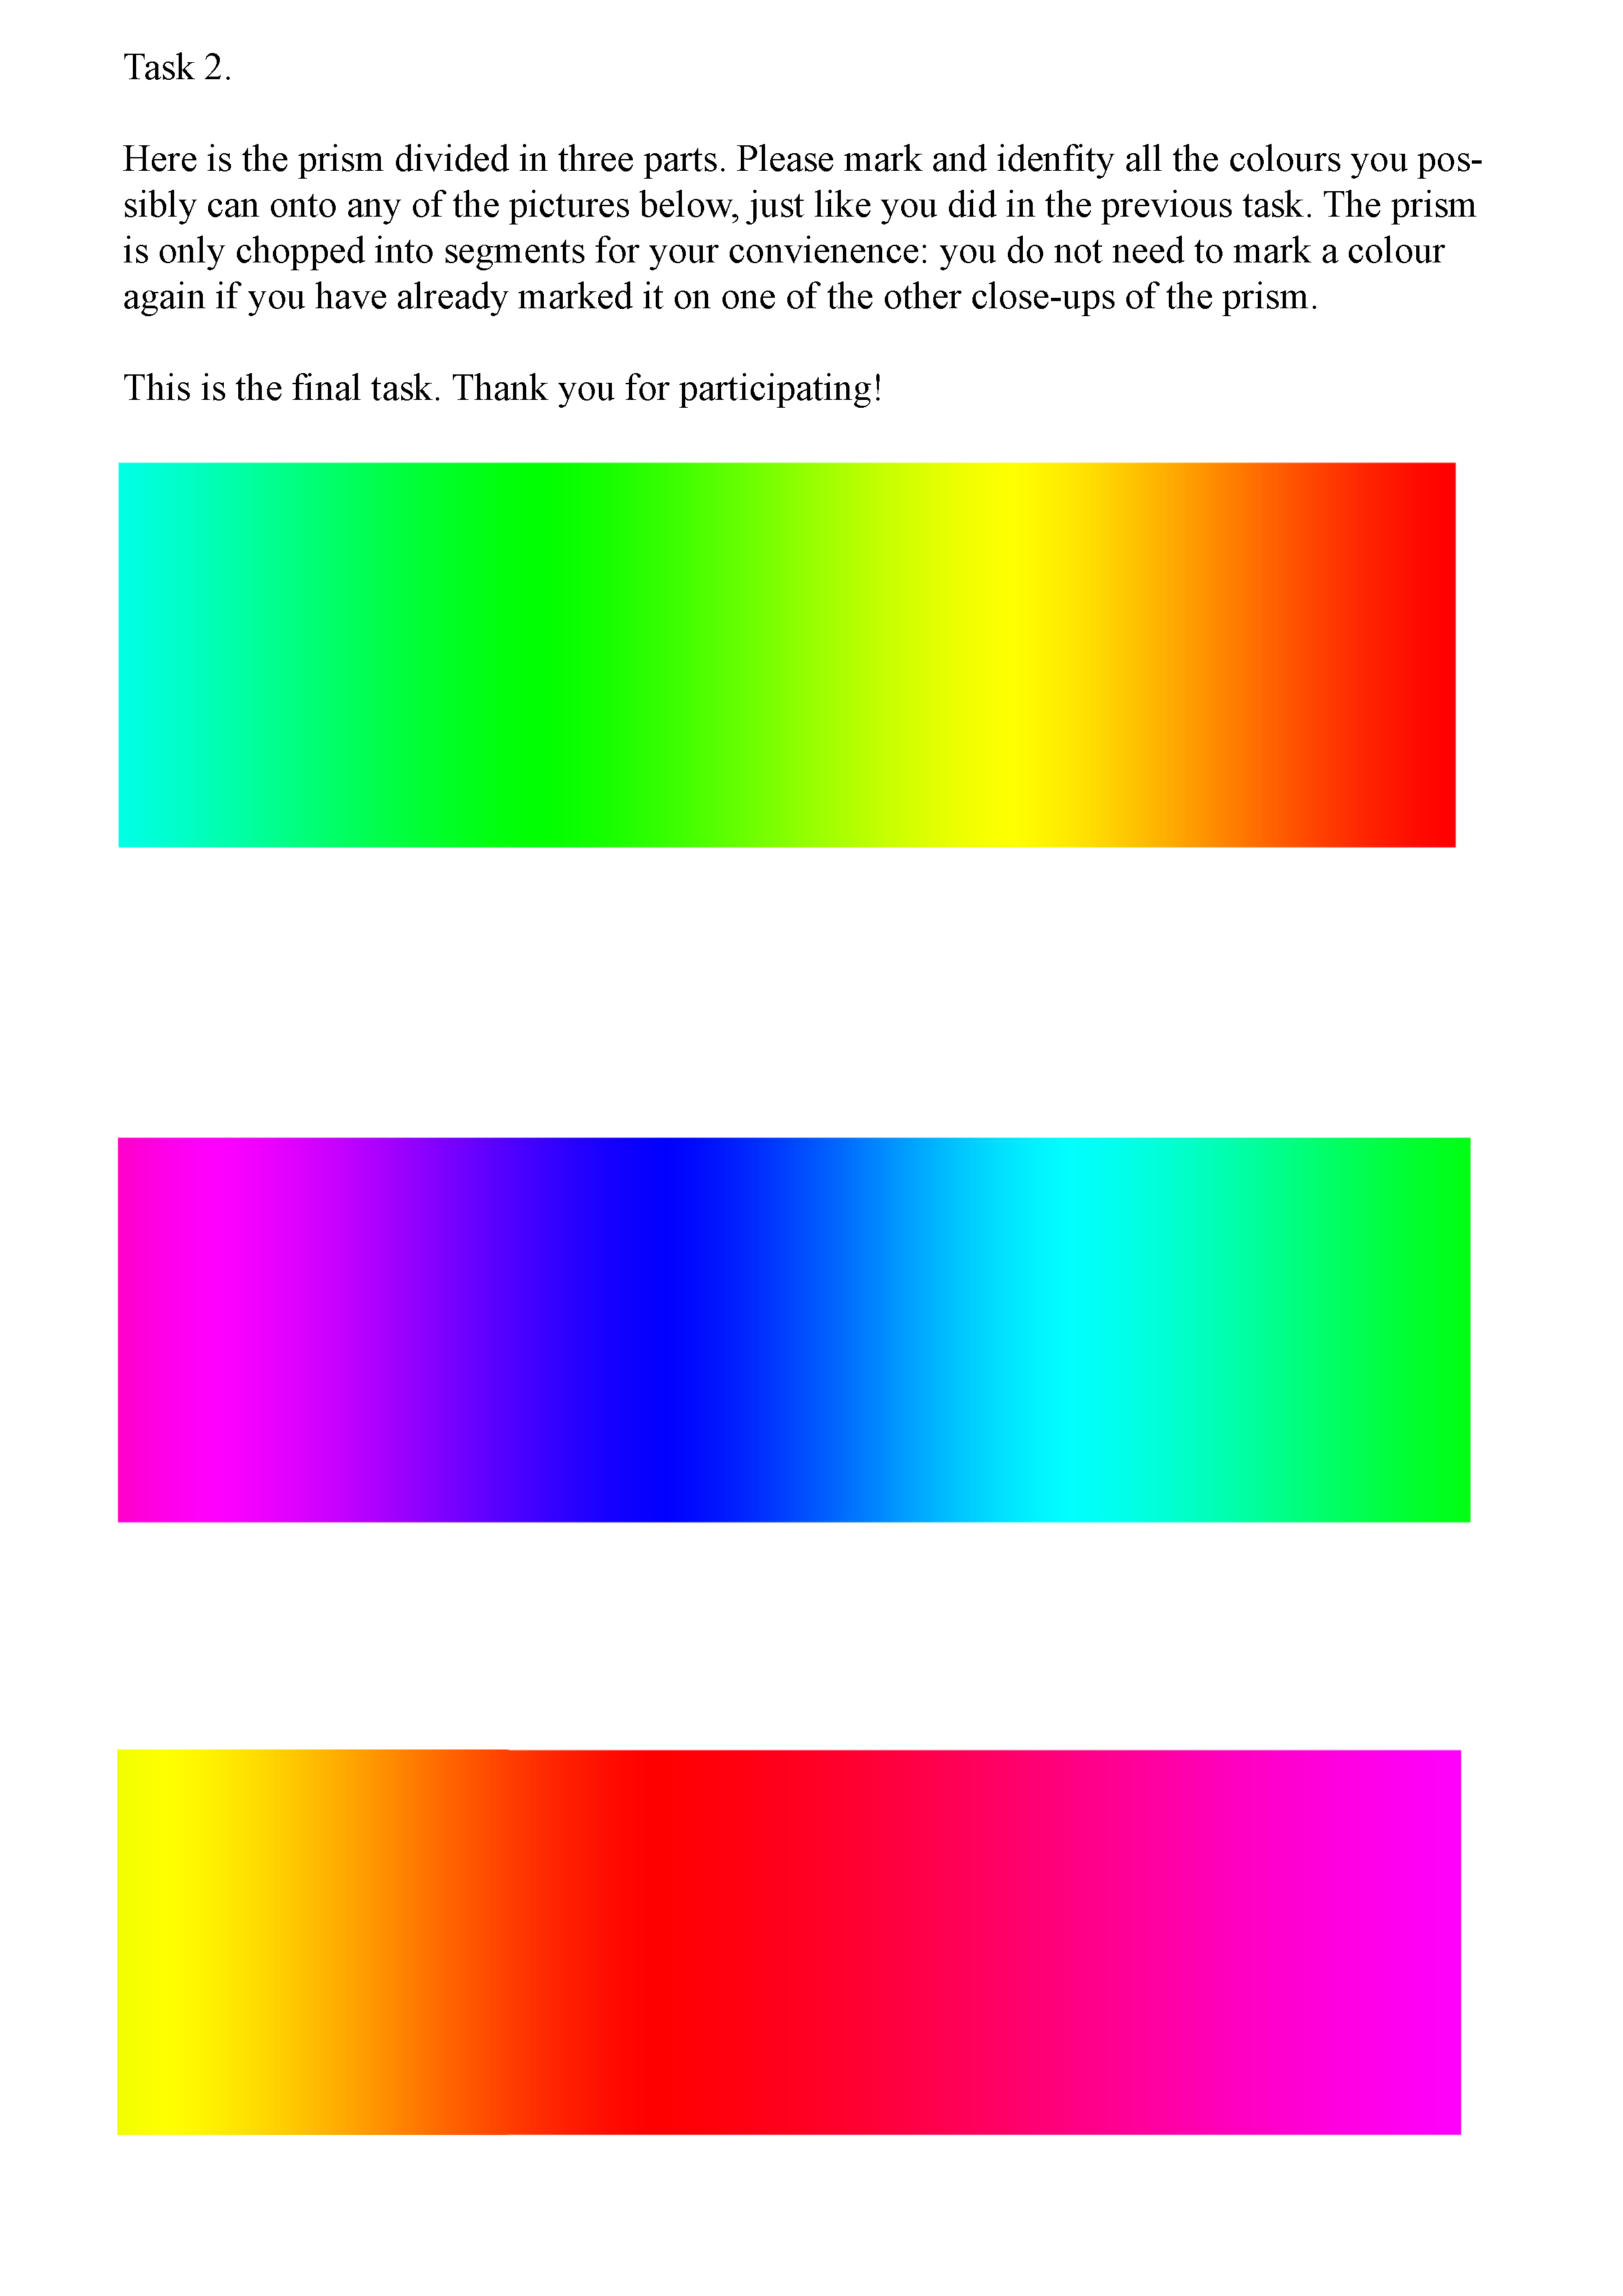 colour_task2_jpg_eng.jpg